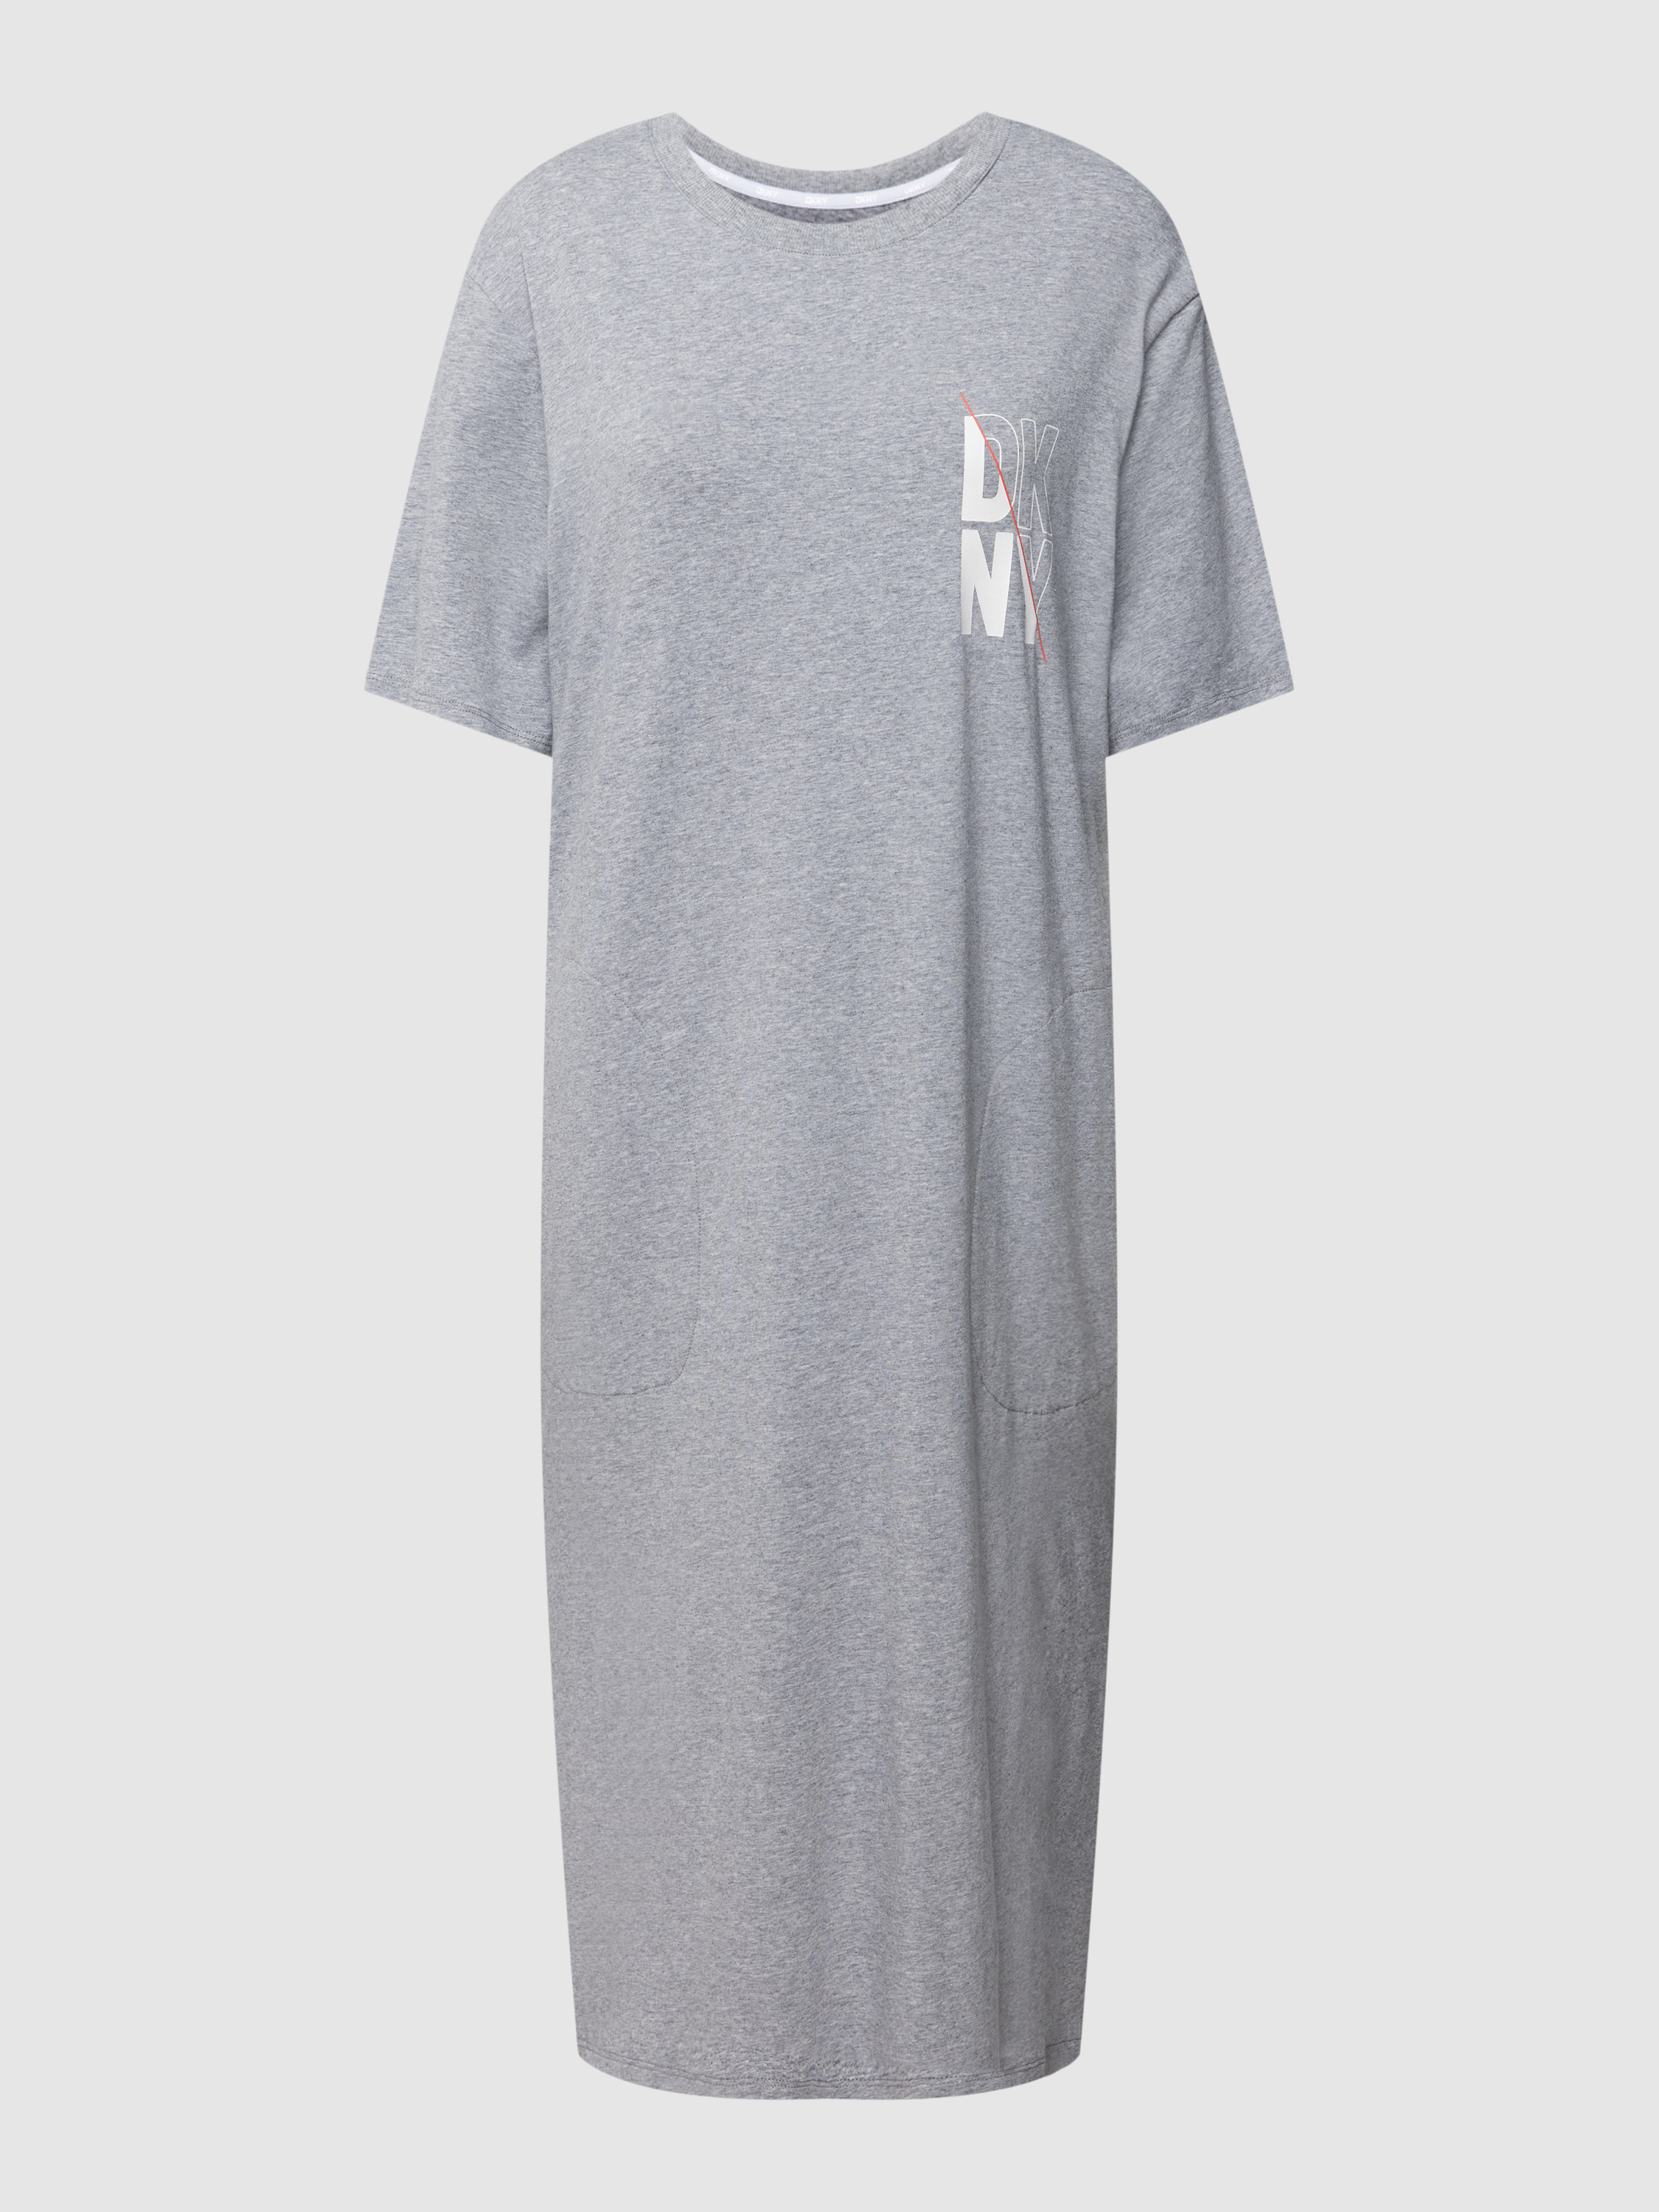 Платье домашнее женское DKNY 1785740 серое XS (доставка из-за рубежа)